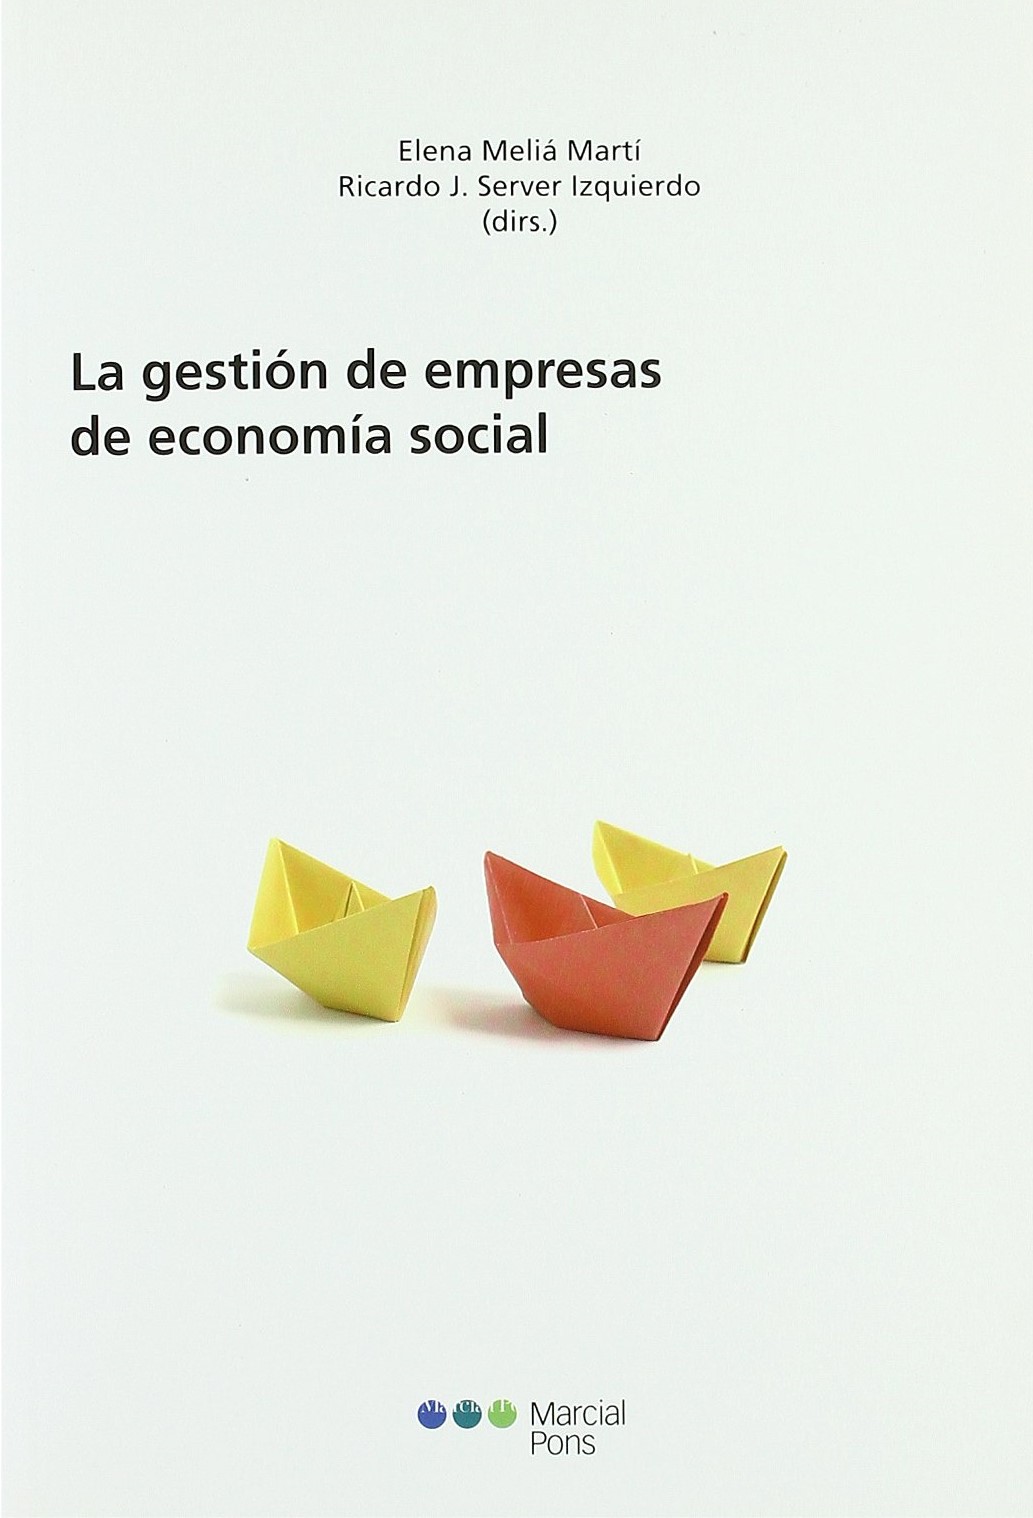 La gestión de empresas de economía social